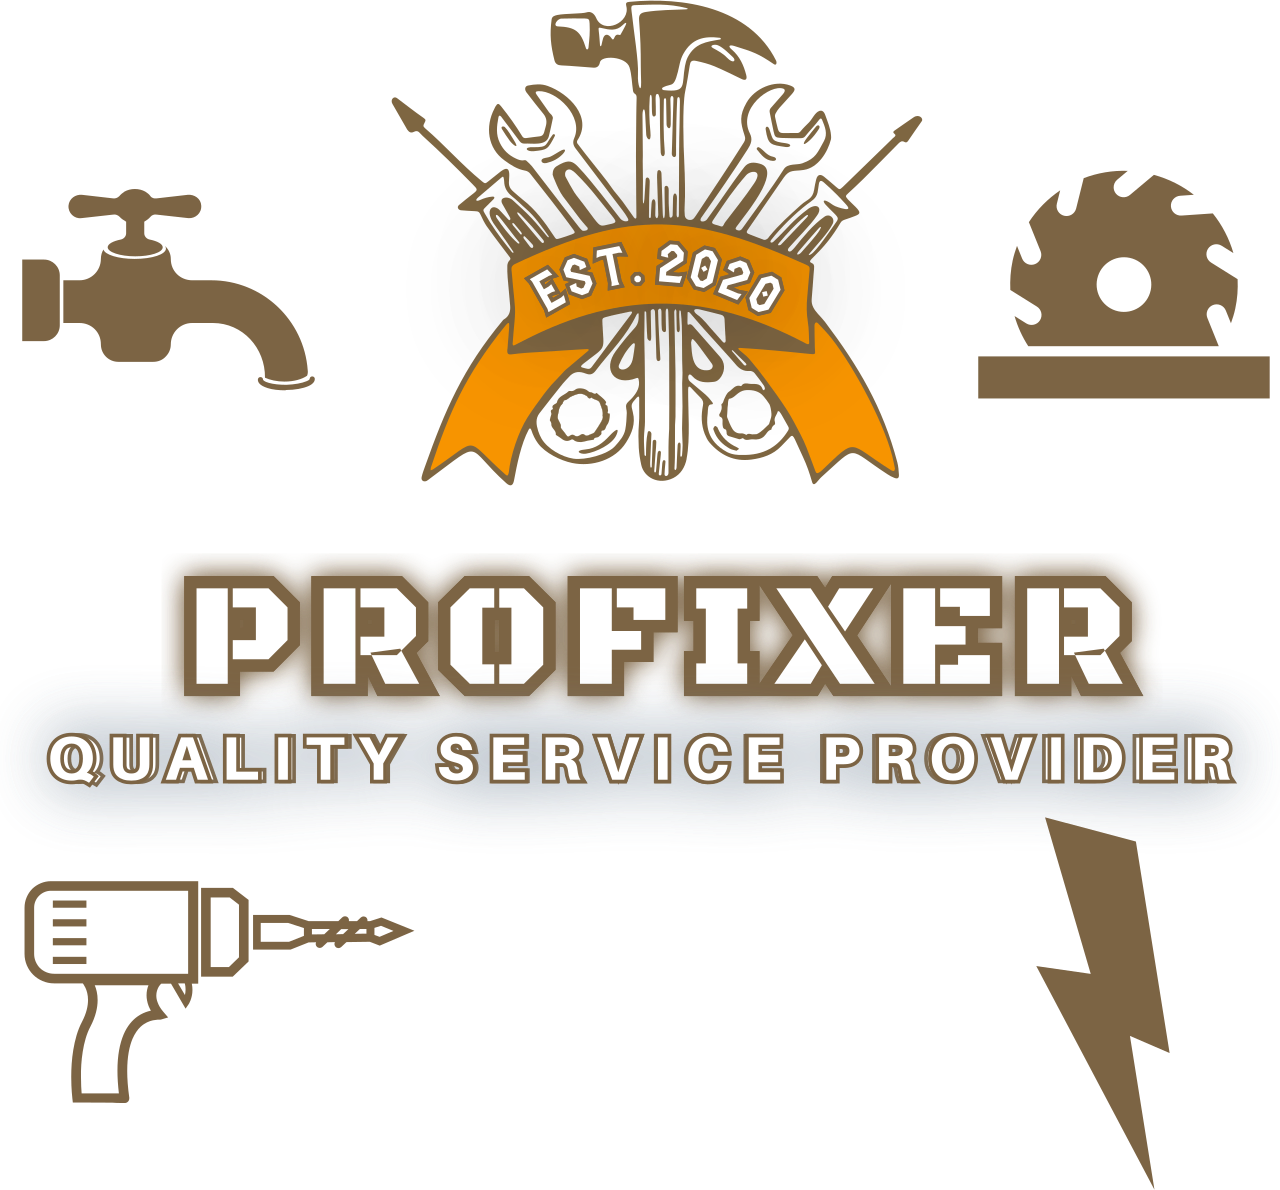 ProFixer's logo